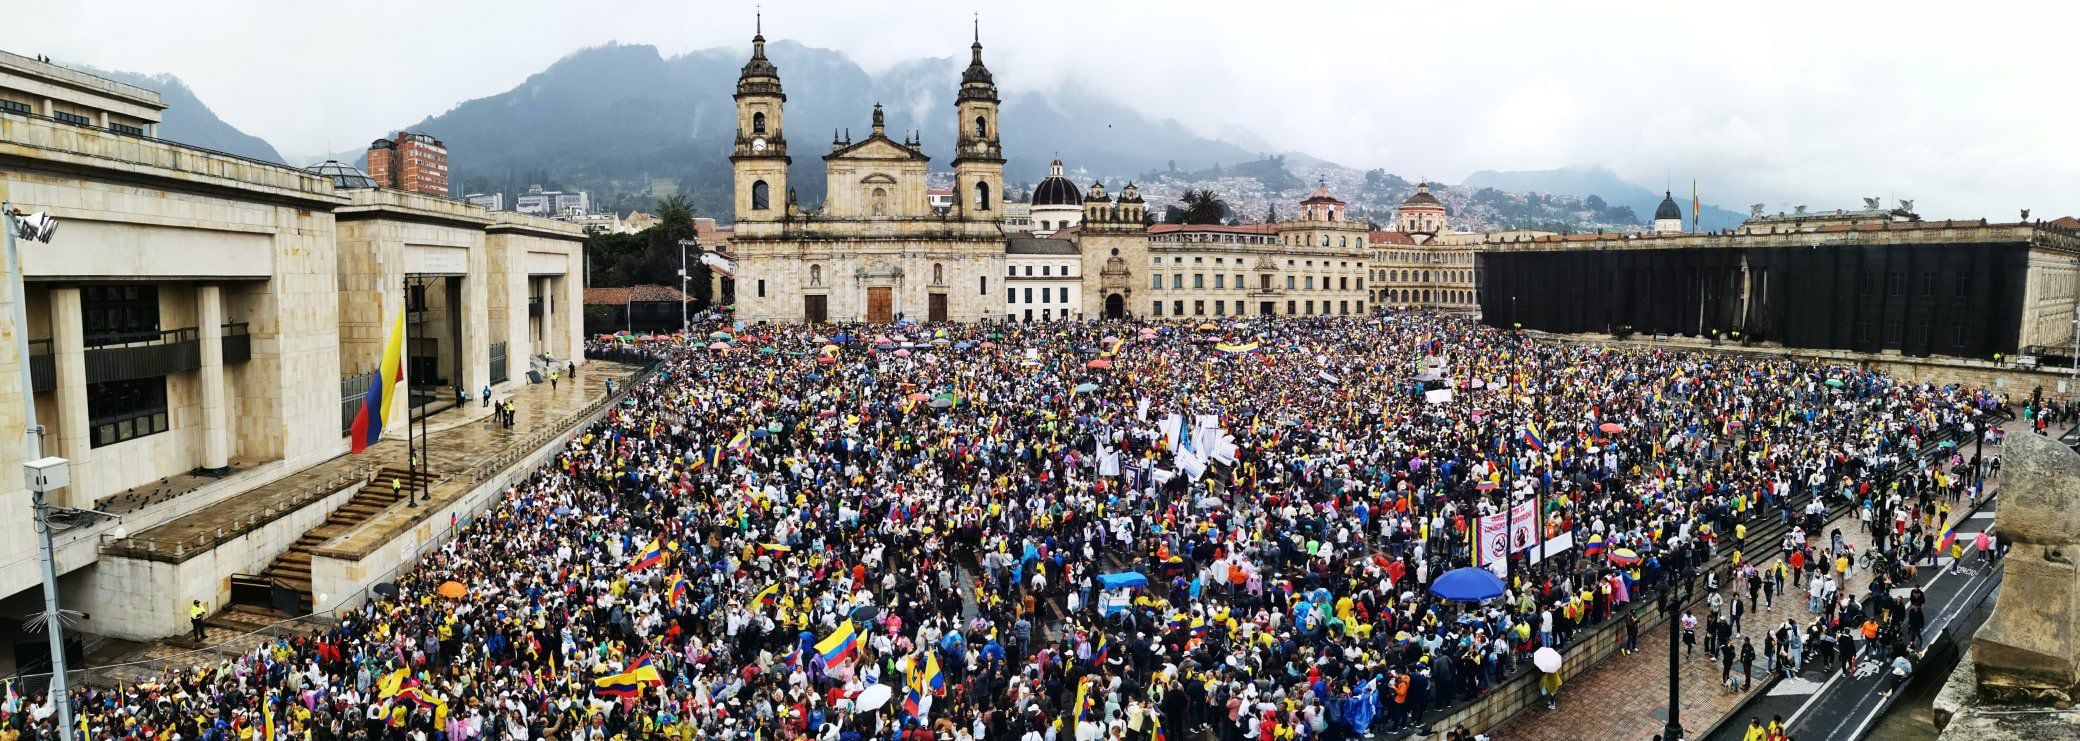 Más de 45.000 personas llenaron la Plaza de Bolívar de Bogotá, durante la jornada del 21 de abril - crédito Alcaldía de Bogotá